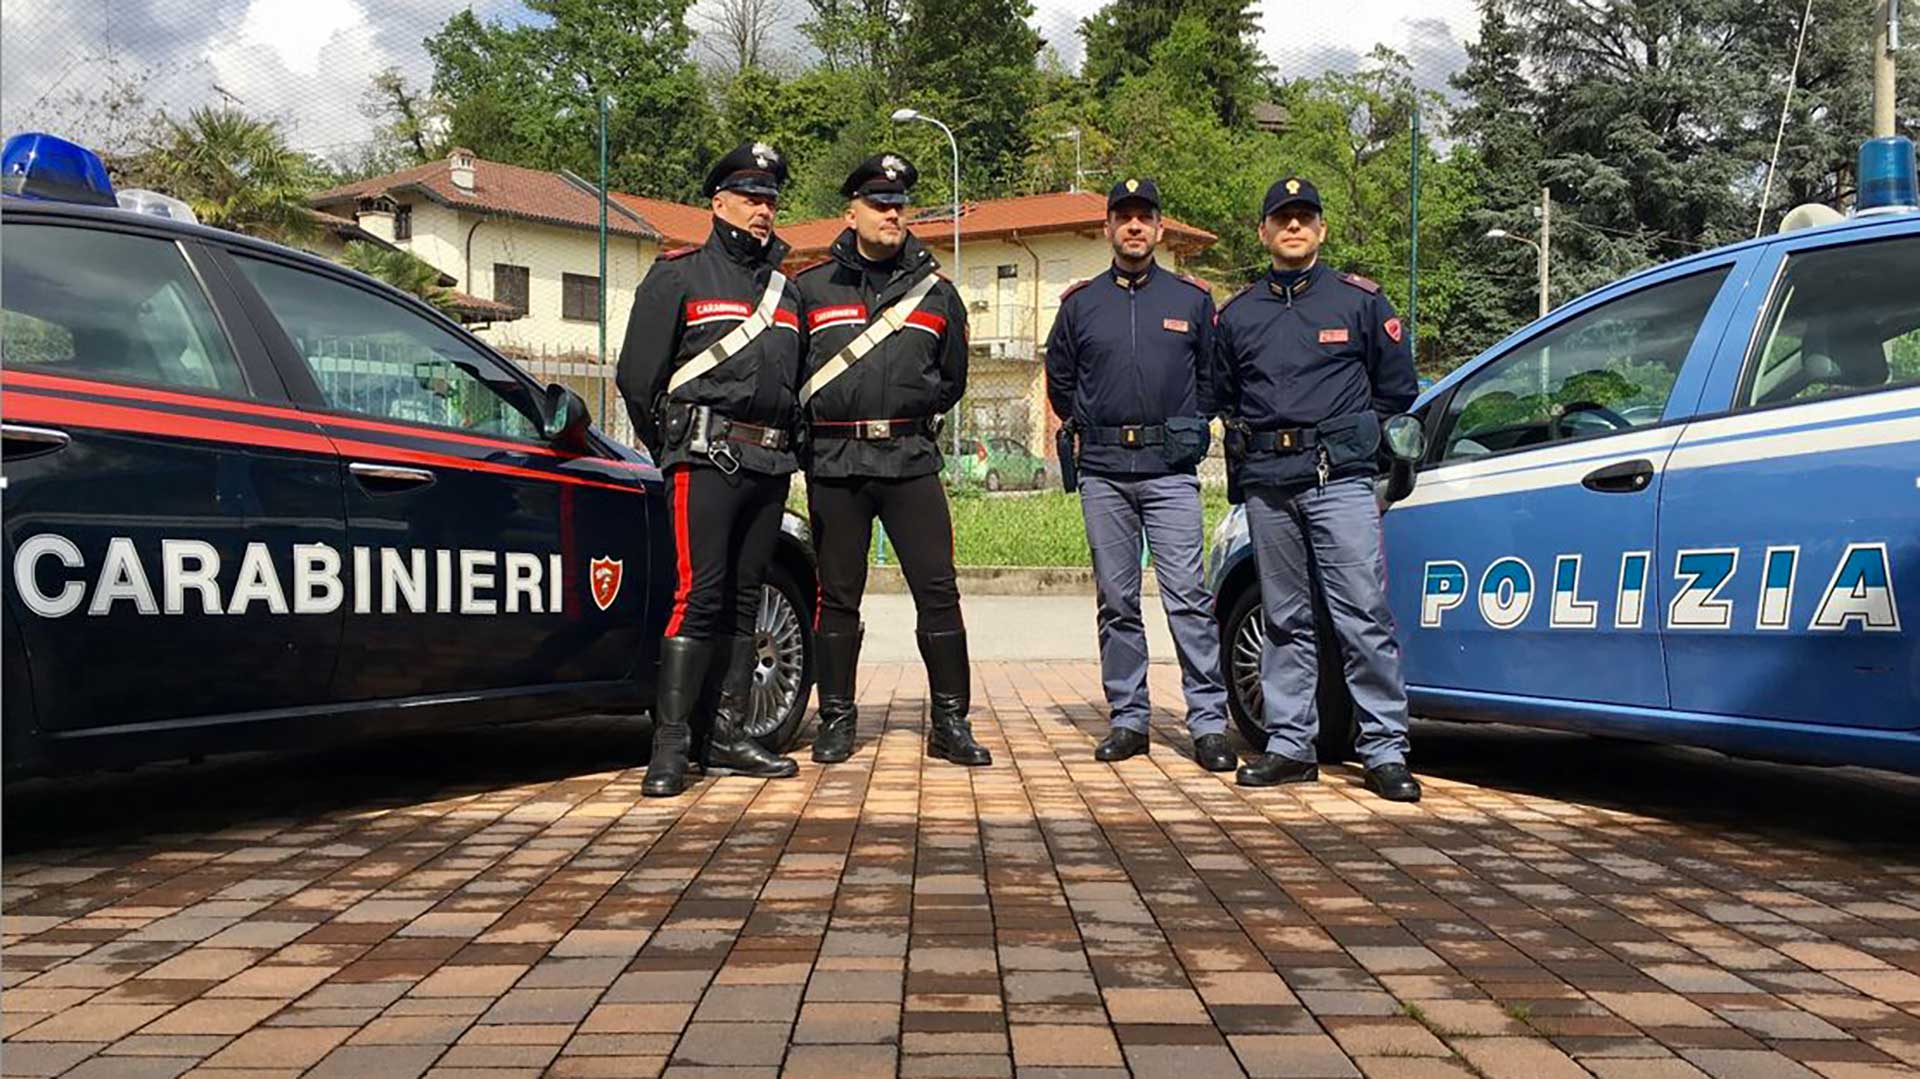 Polizia di stato arma dei carabinieri